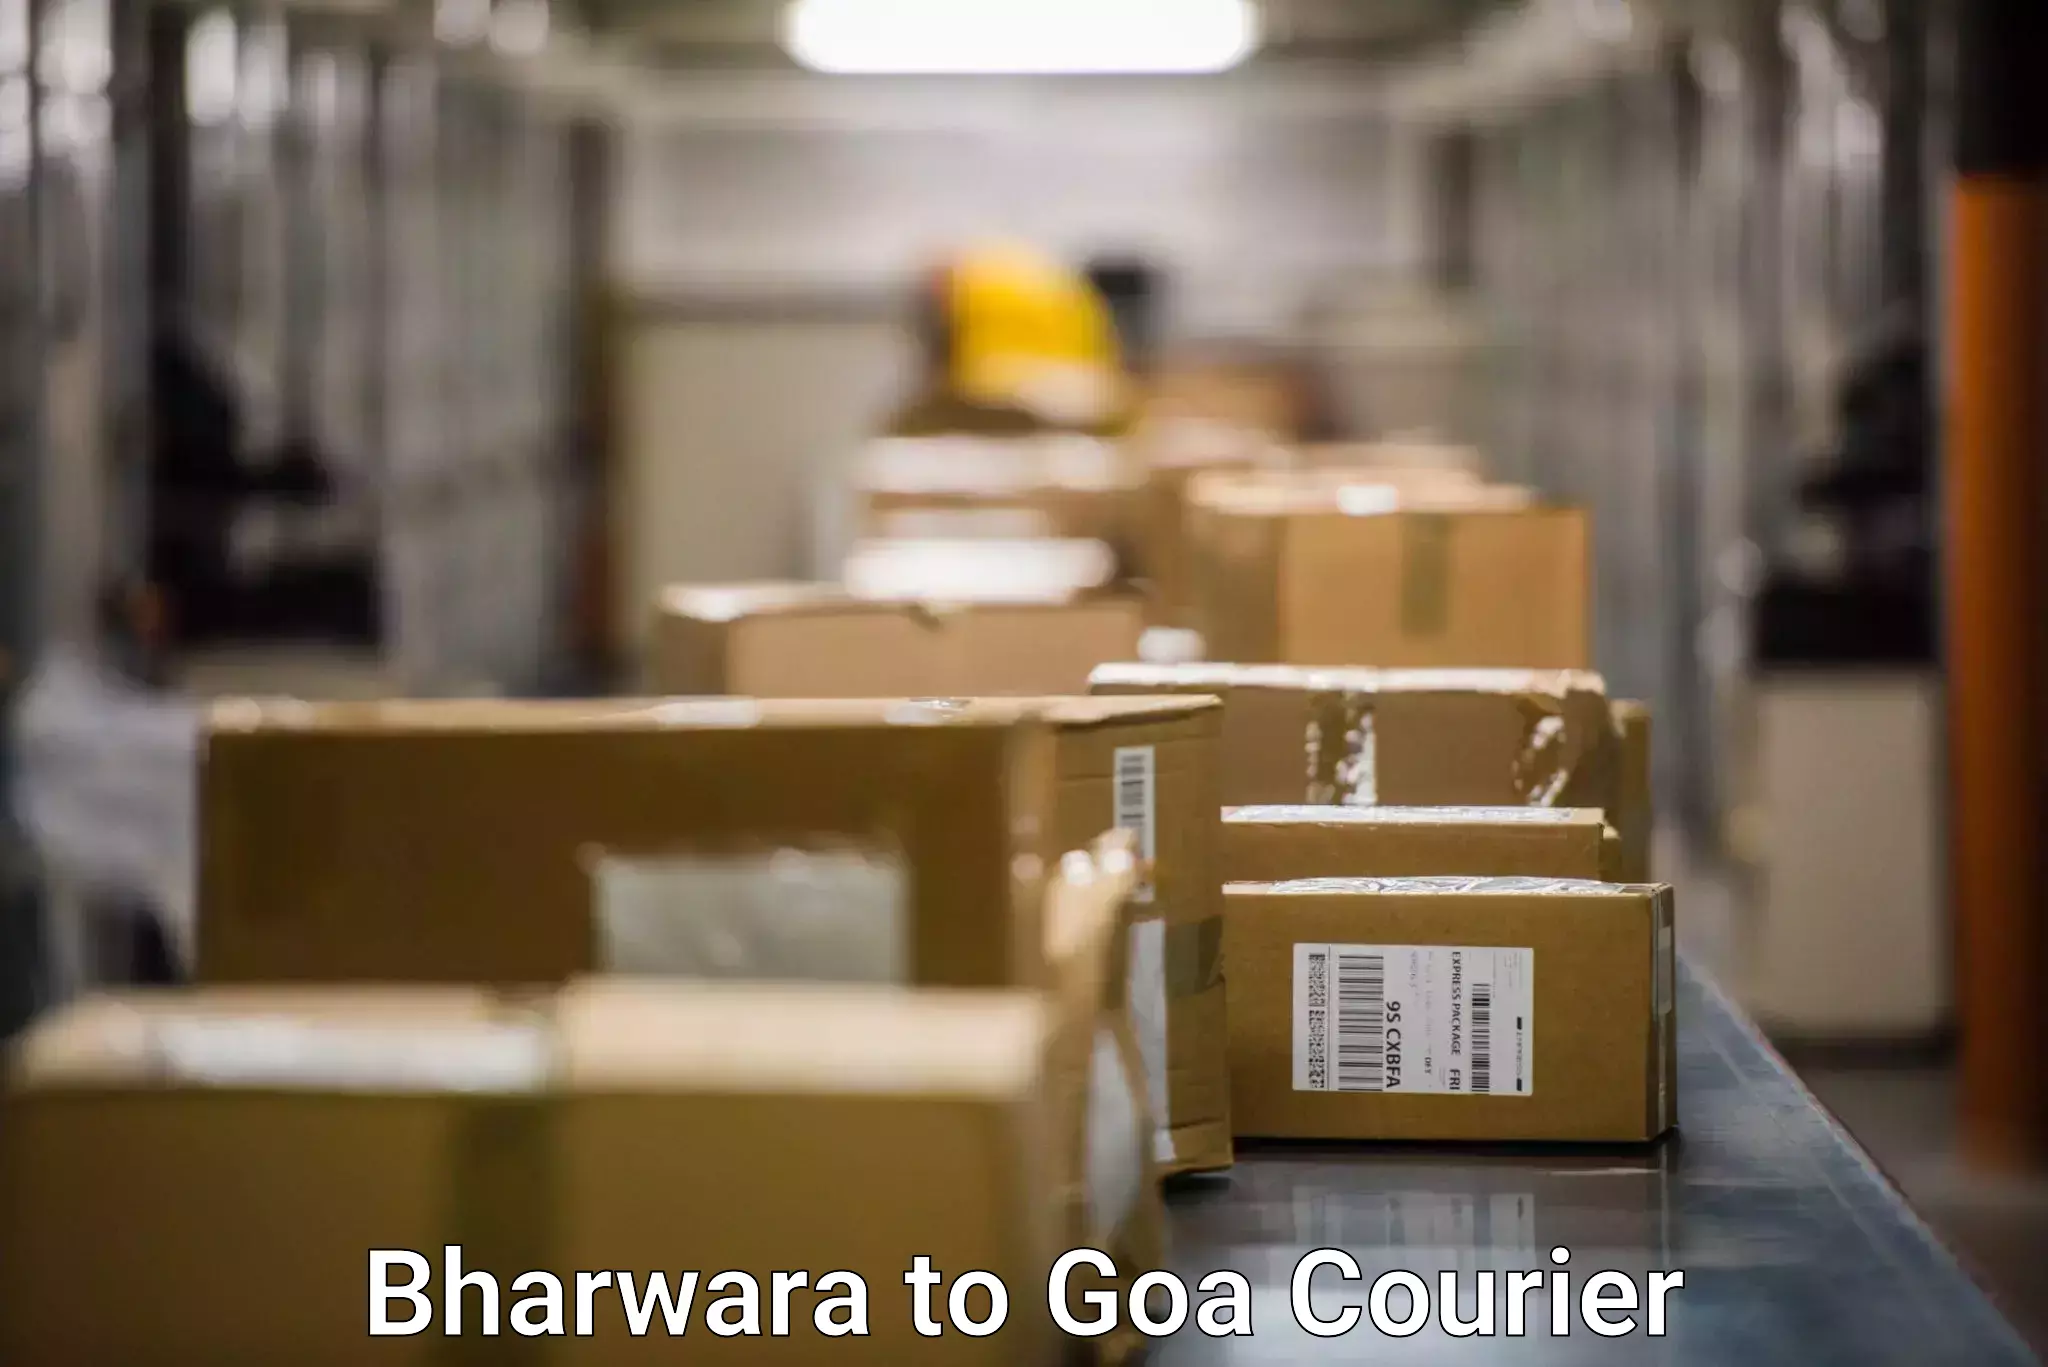 Modern courier technology Bharwara to Ponda